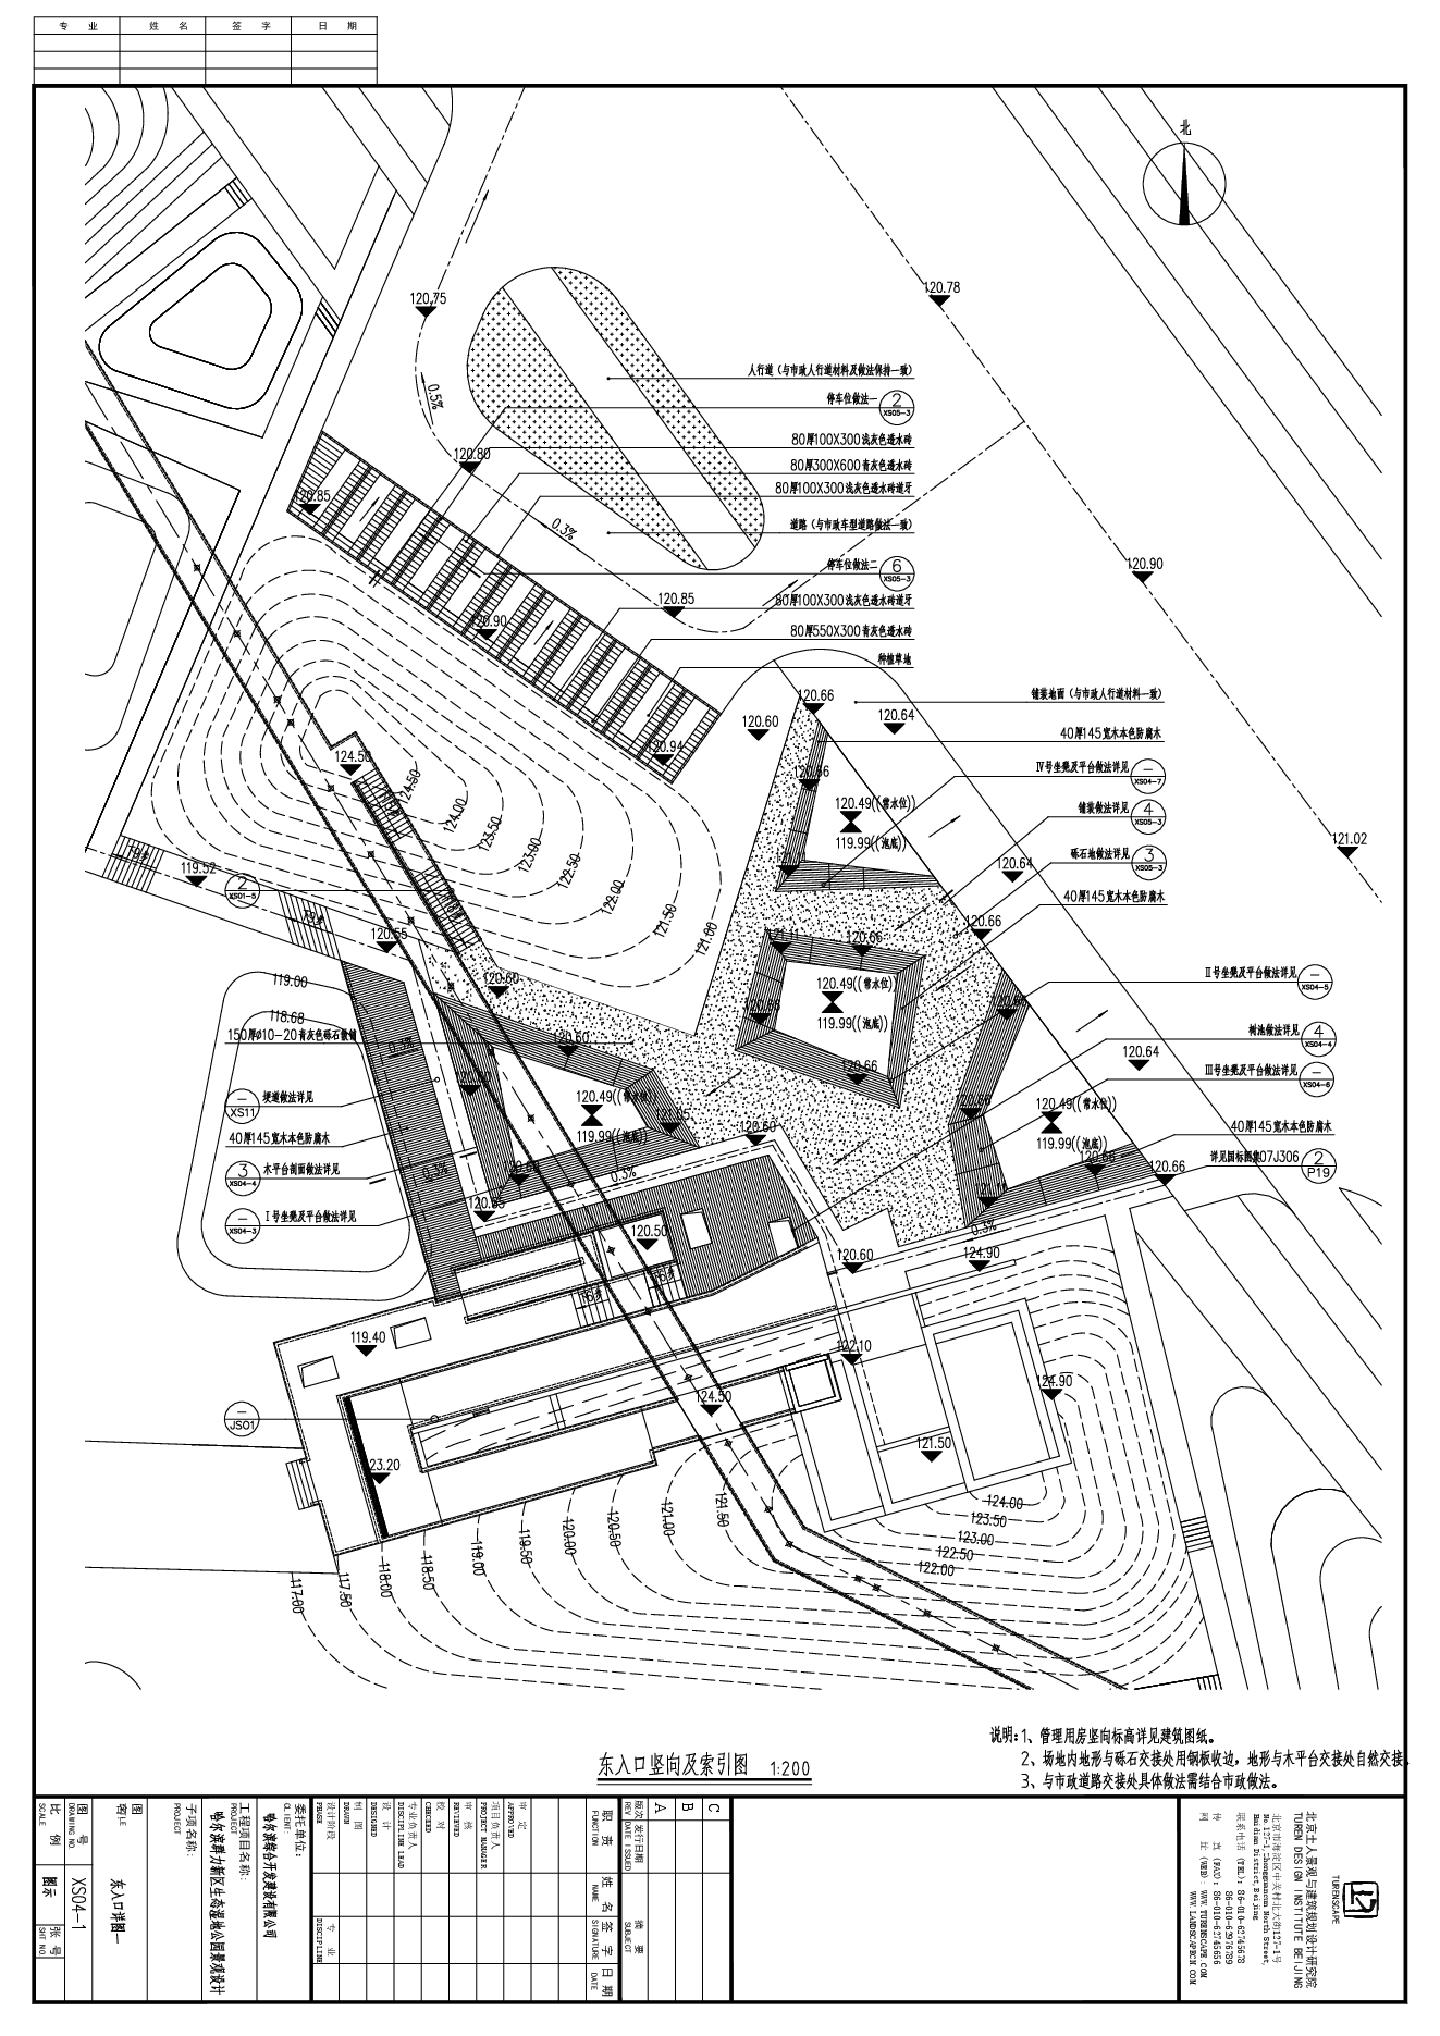 哈尔滨群力新区生态湿地公园景观设计-XS04-1东入口详图CAD图